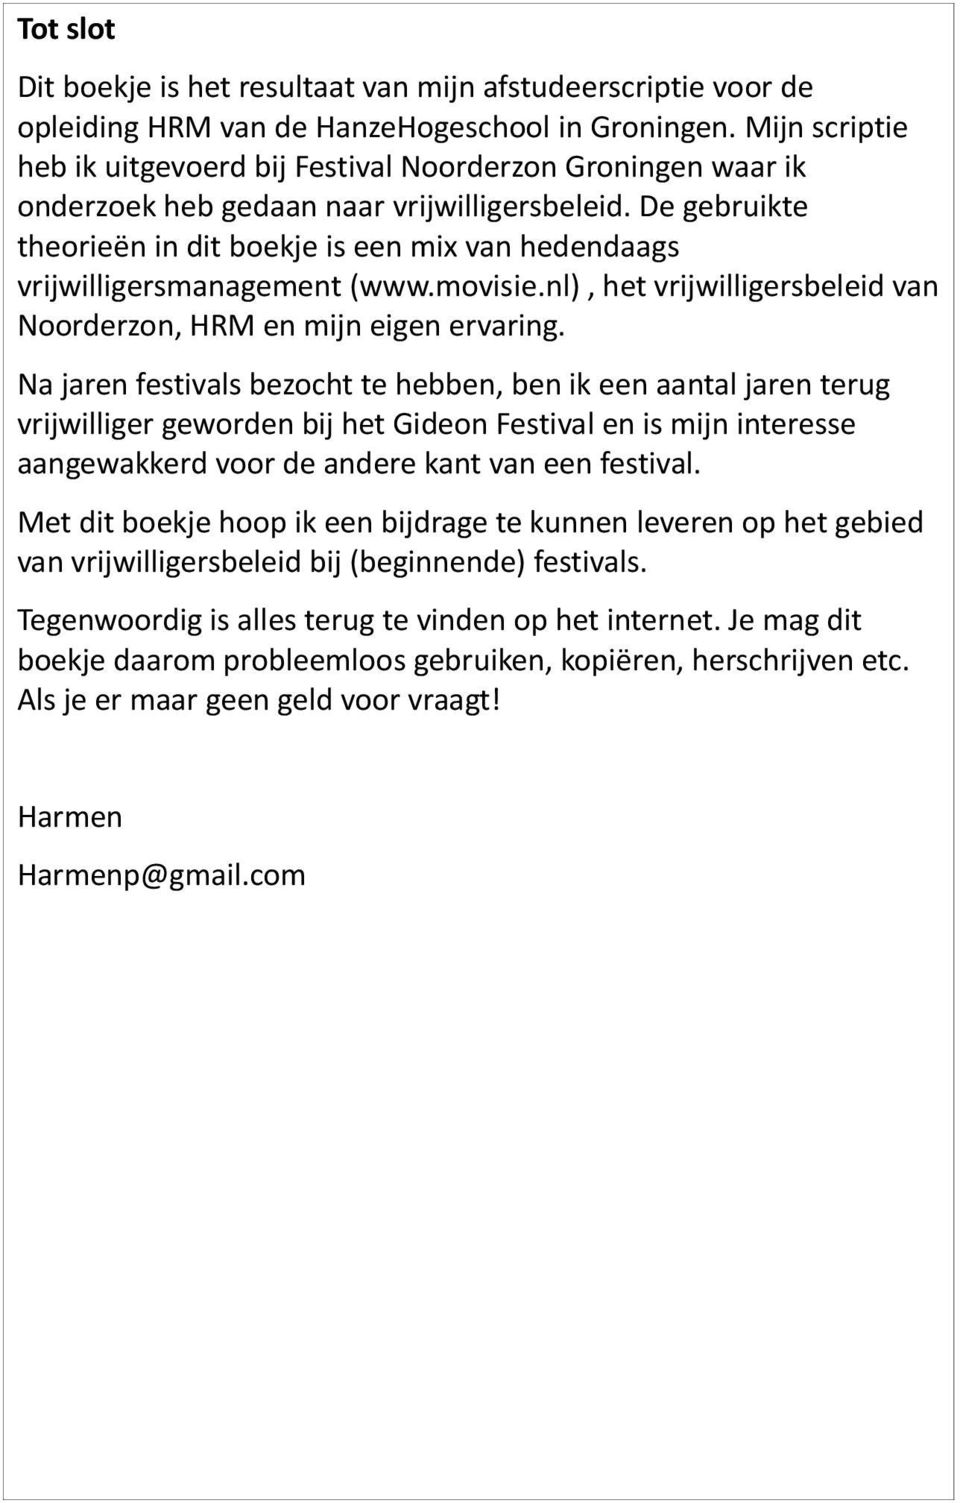 De gebruikte theorieën in dit boekje is een mix van hedendaags vrijwilligersmanagement (www.movisie.nl), het vrijwilligersbeleid van Noorderzon, HRM en mijn eigen ervaring.